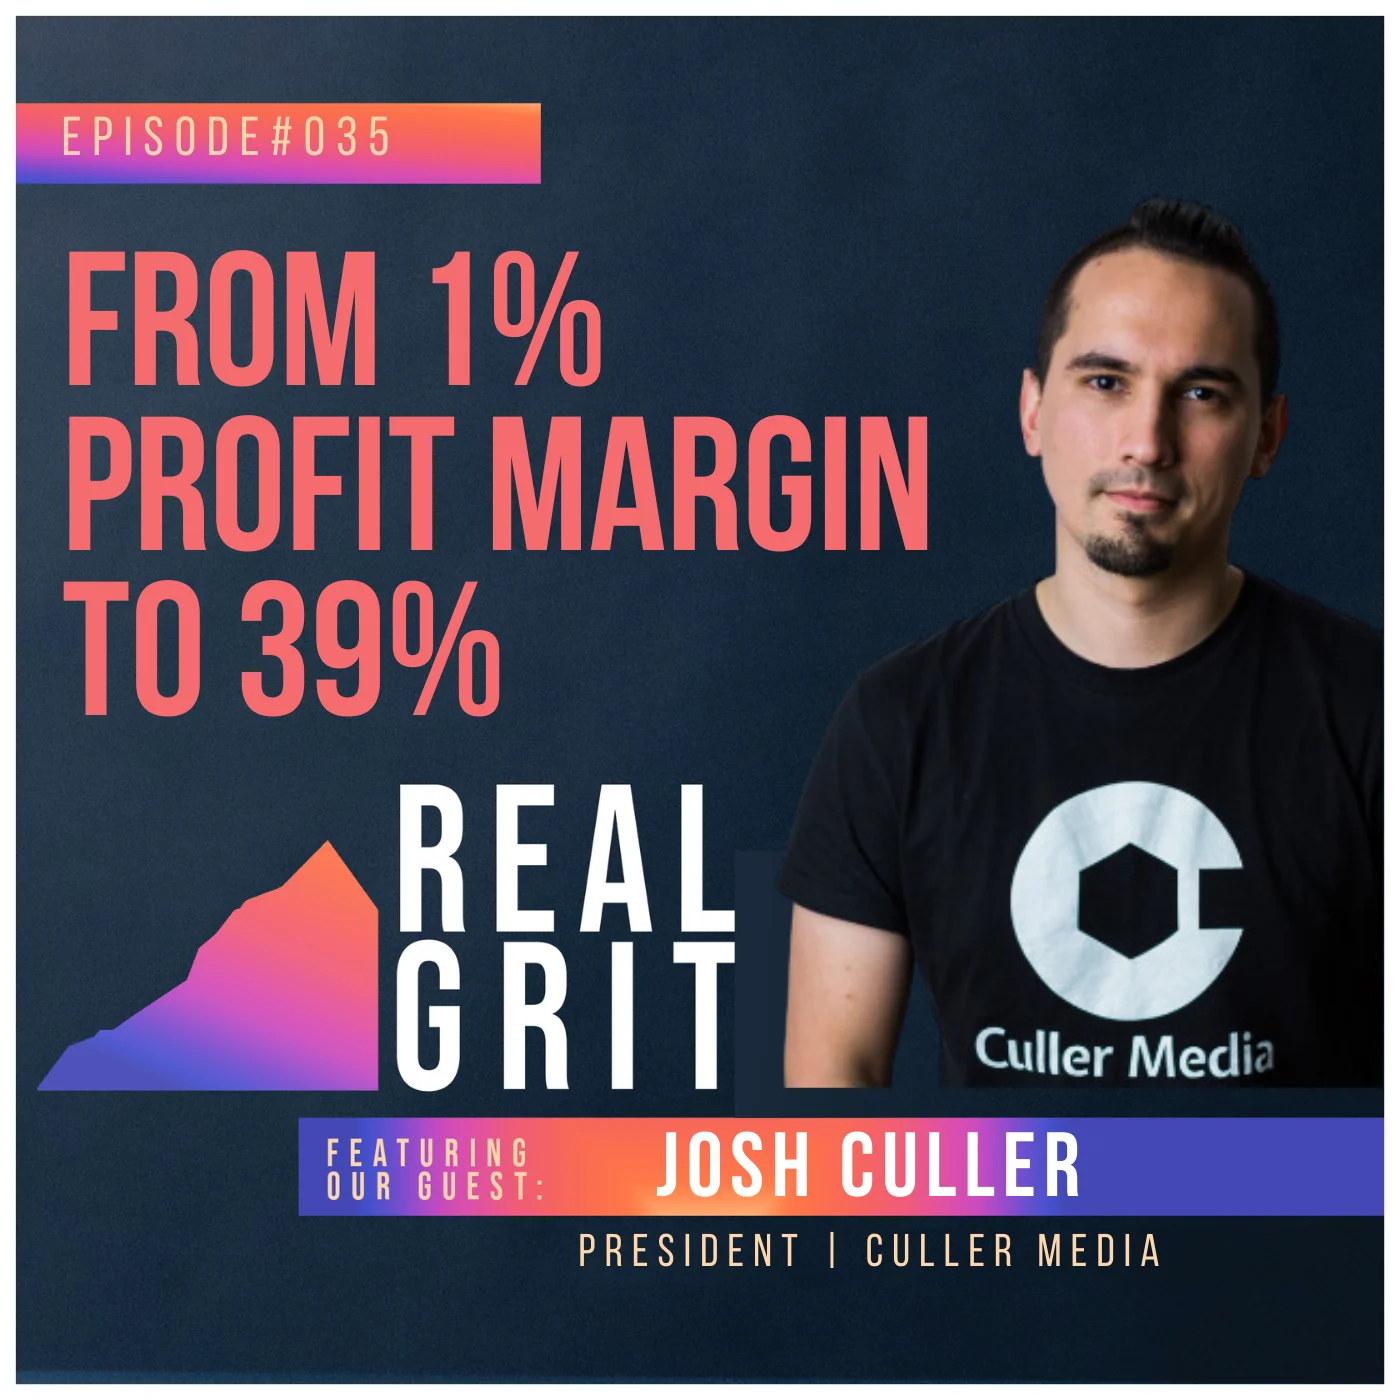 Josh Culler podcast promo image